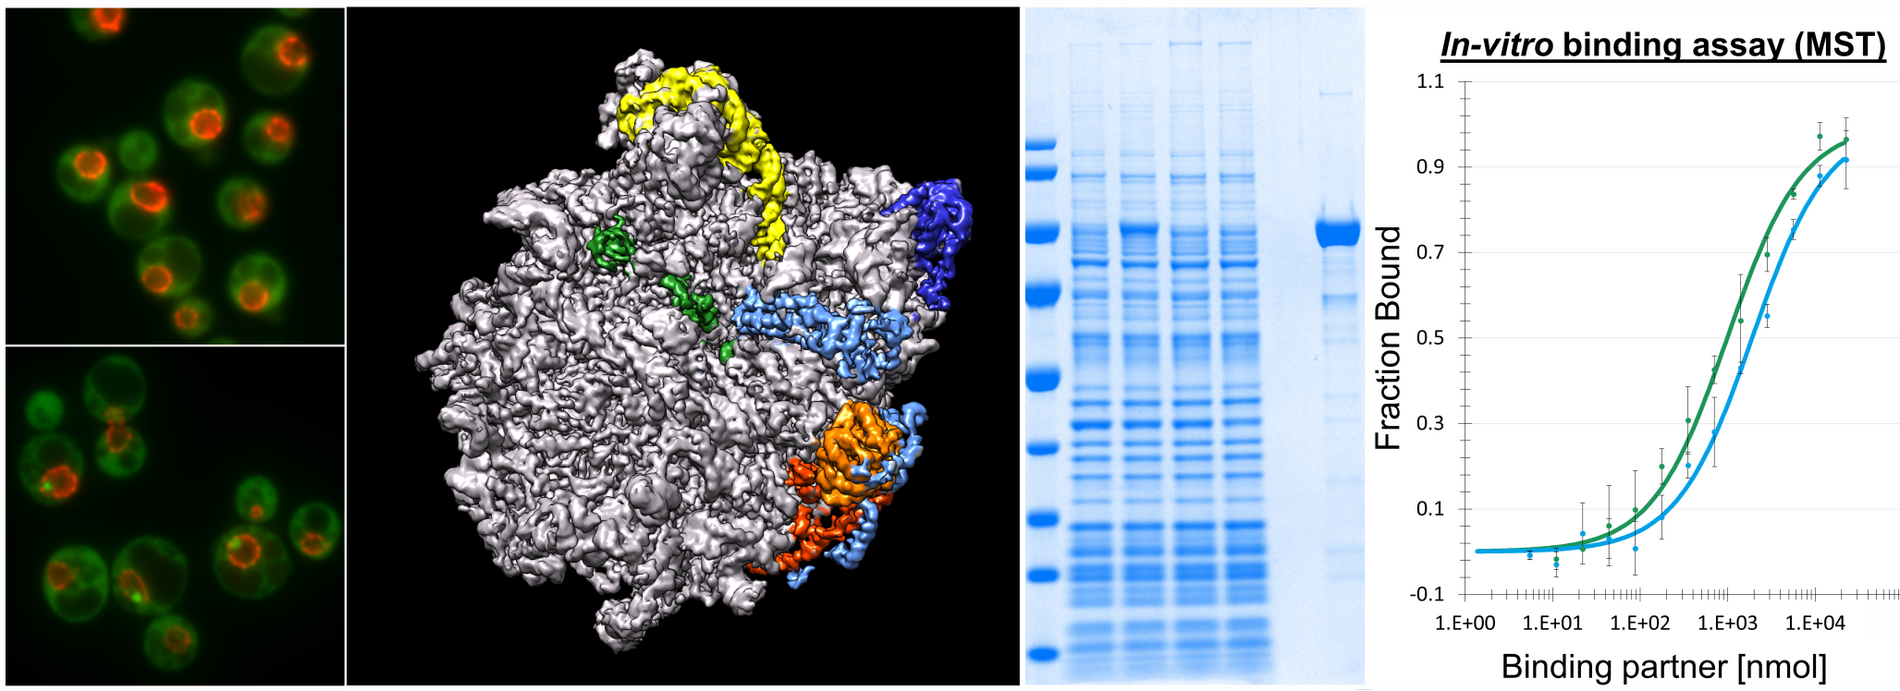 Proteinsynthese In-vitro binding assay (MST) ©Helmut Bergler